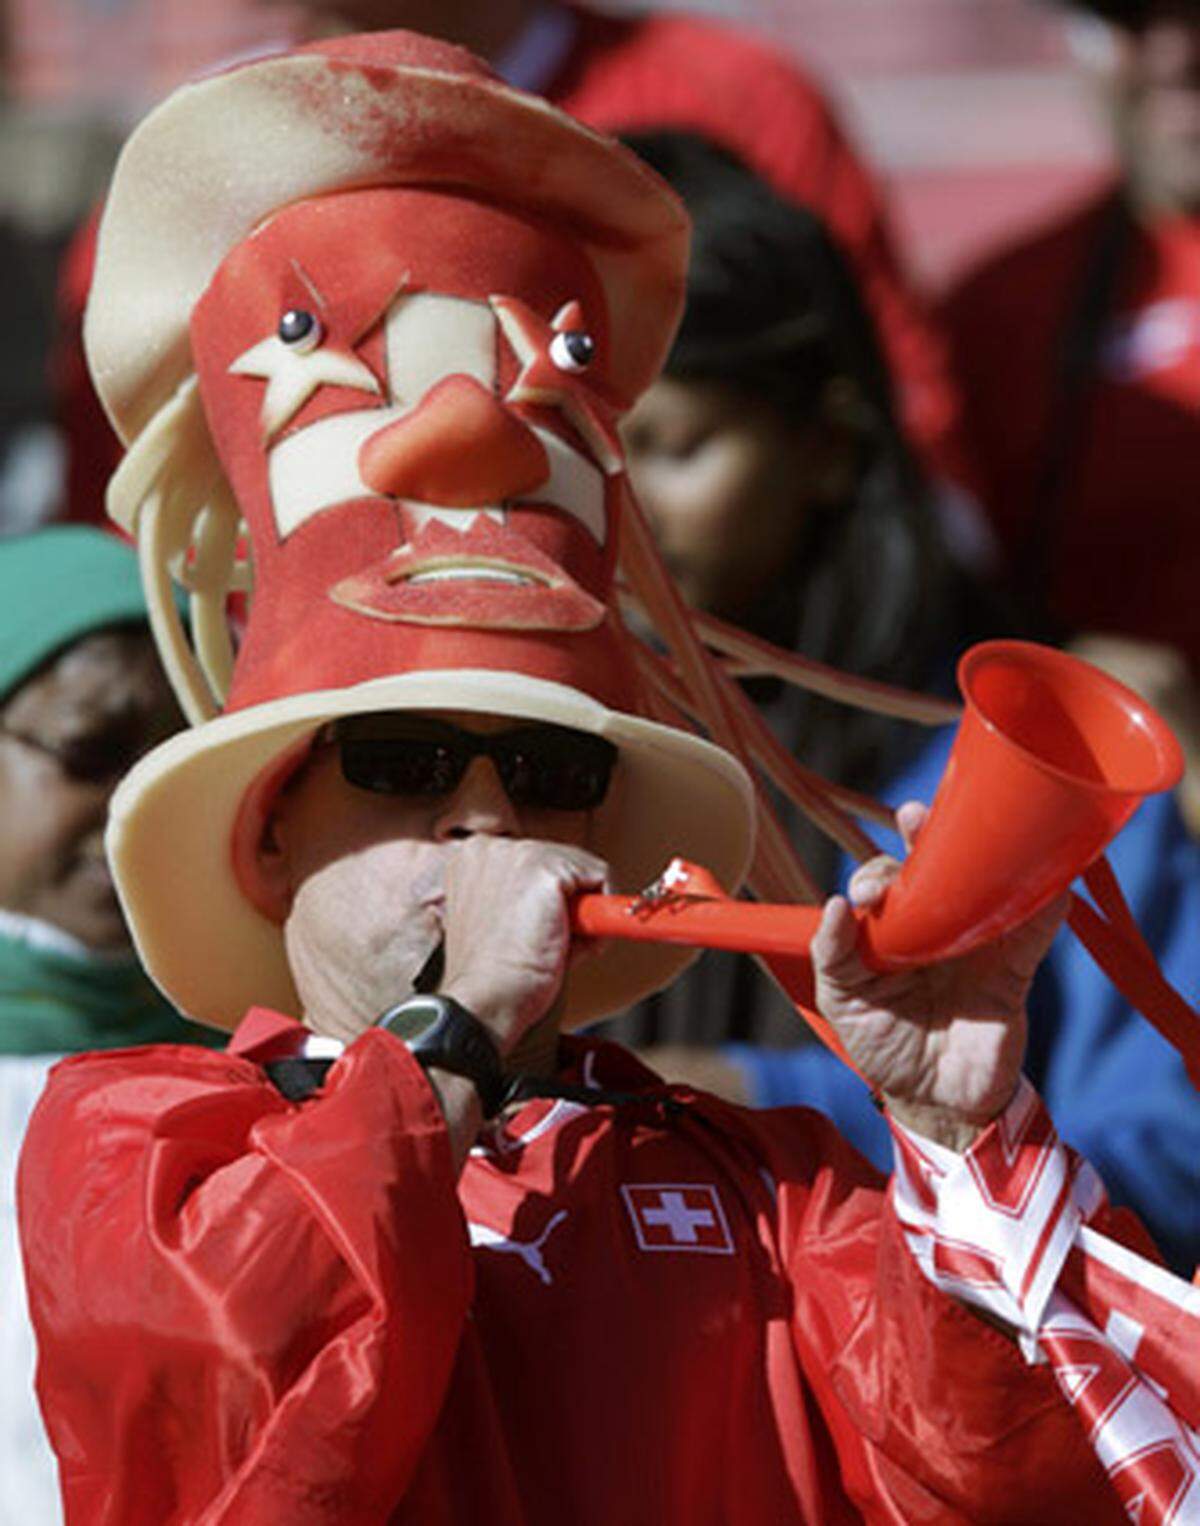 Genervt vom Lärm der Vuvuzelas haben Unbekannte die Tröten von zwei Fußballfans geraubt. Nach Angaben der Polizei von Koblenz (Deutschland) waren die beiden betrunkenen Fans am Samstagabend in der Stadt unterwegs und machten dabei auch von dem Blasinstrument Gebrauch, das zum umstrittenen WM-Symbol geworden ist. Der durchdringende, eintönige Klang der Vuvuzelas reizte mehrere Mitglieder einer Gruppe derart, dass sie den beiden Fans Prügel androhten und sie zur Herausgabe der Tröten zwangen.